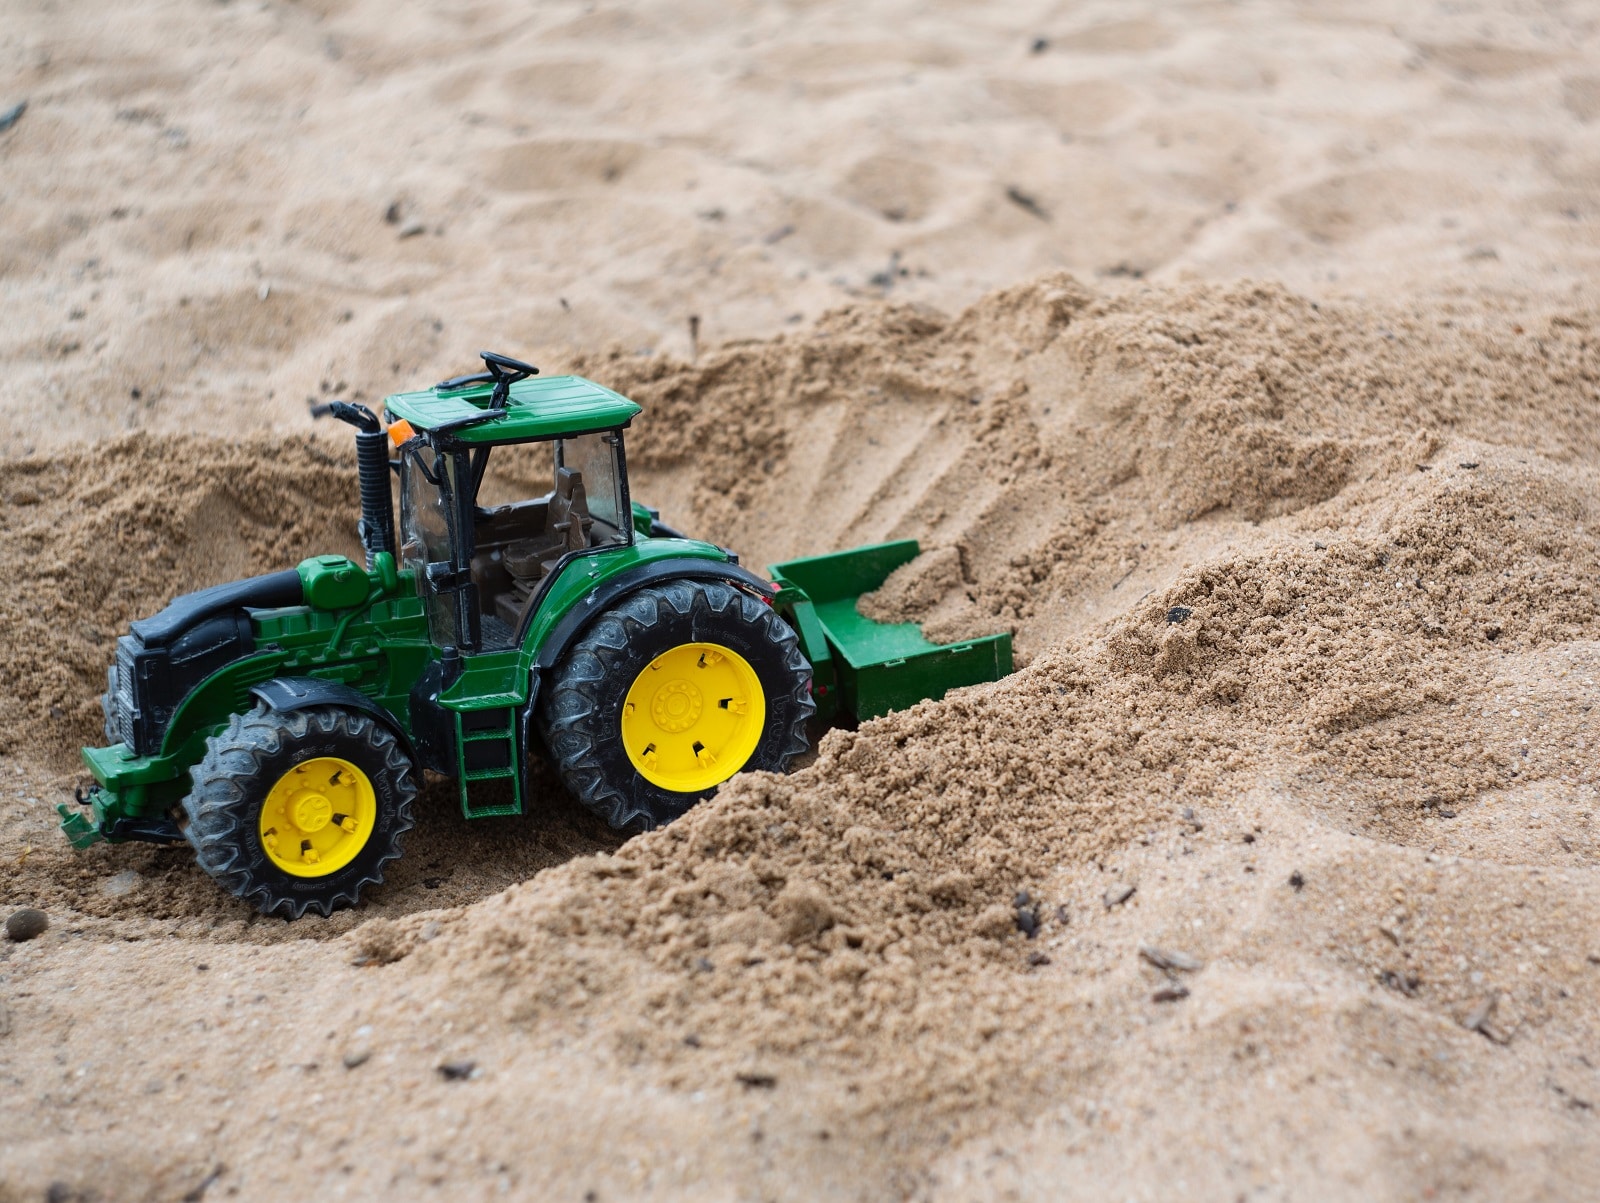 leikkitraktori hiekassa